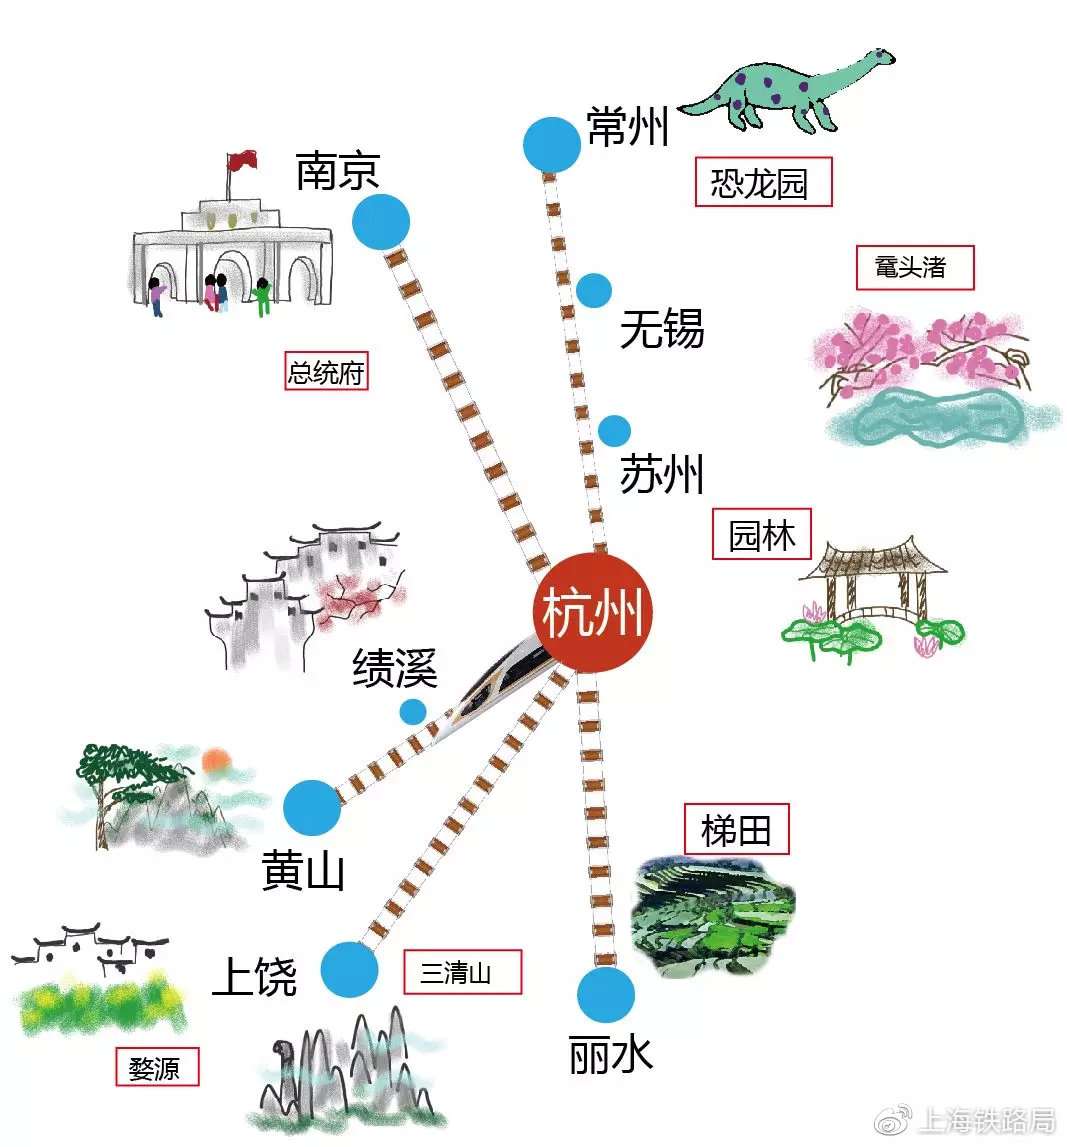 杭州版高铁旅游地图来啦!